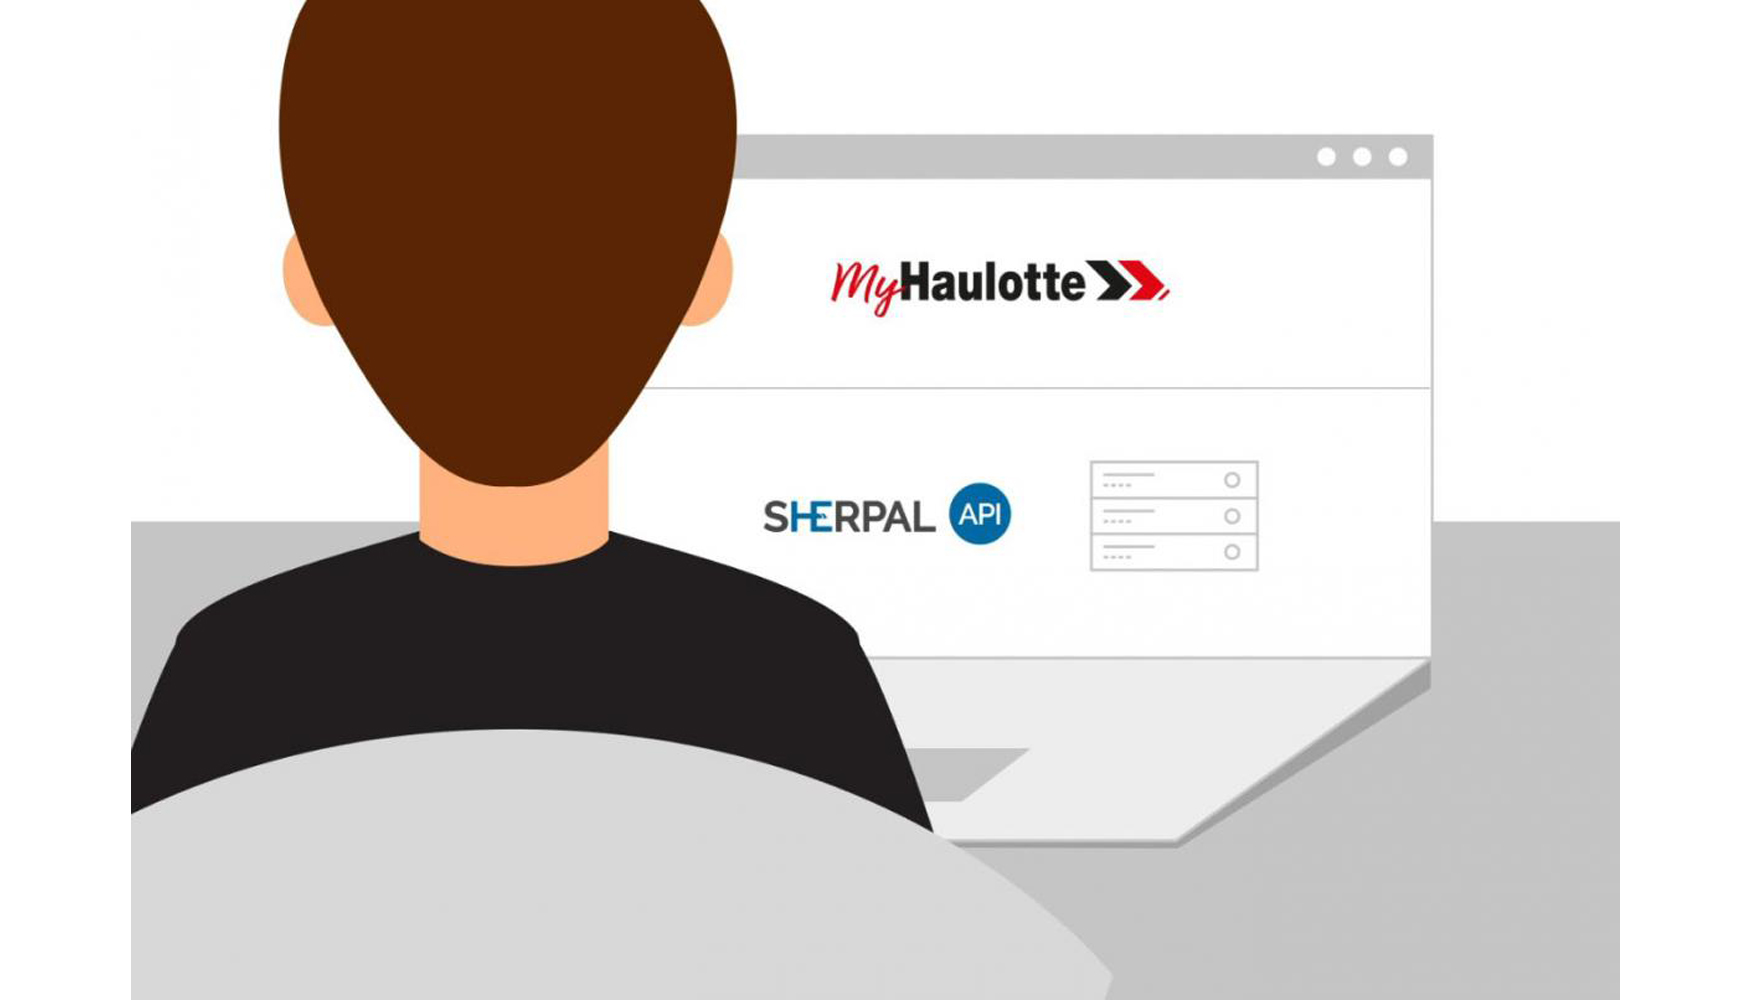 Los clientes pueden aprovechar el portal de servicio MyHaulotte fcil de usar o, alternativamente...